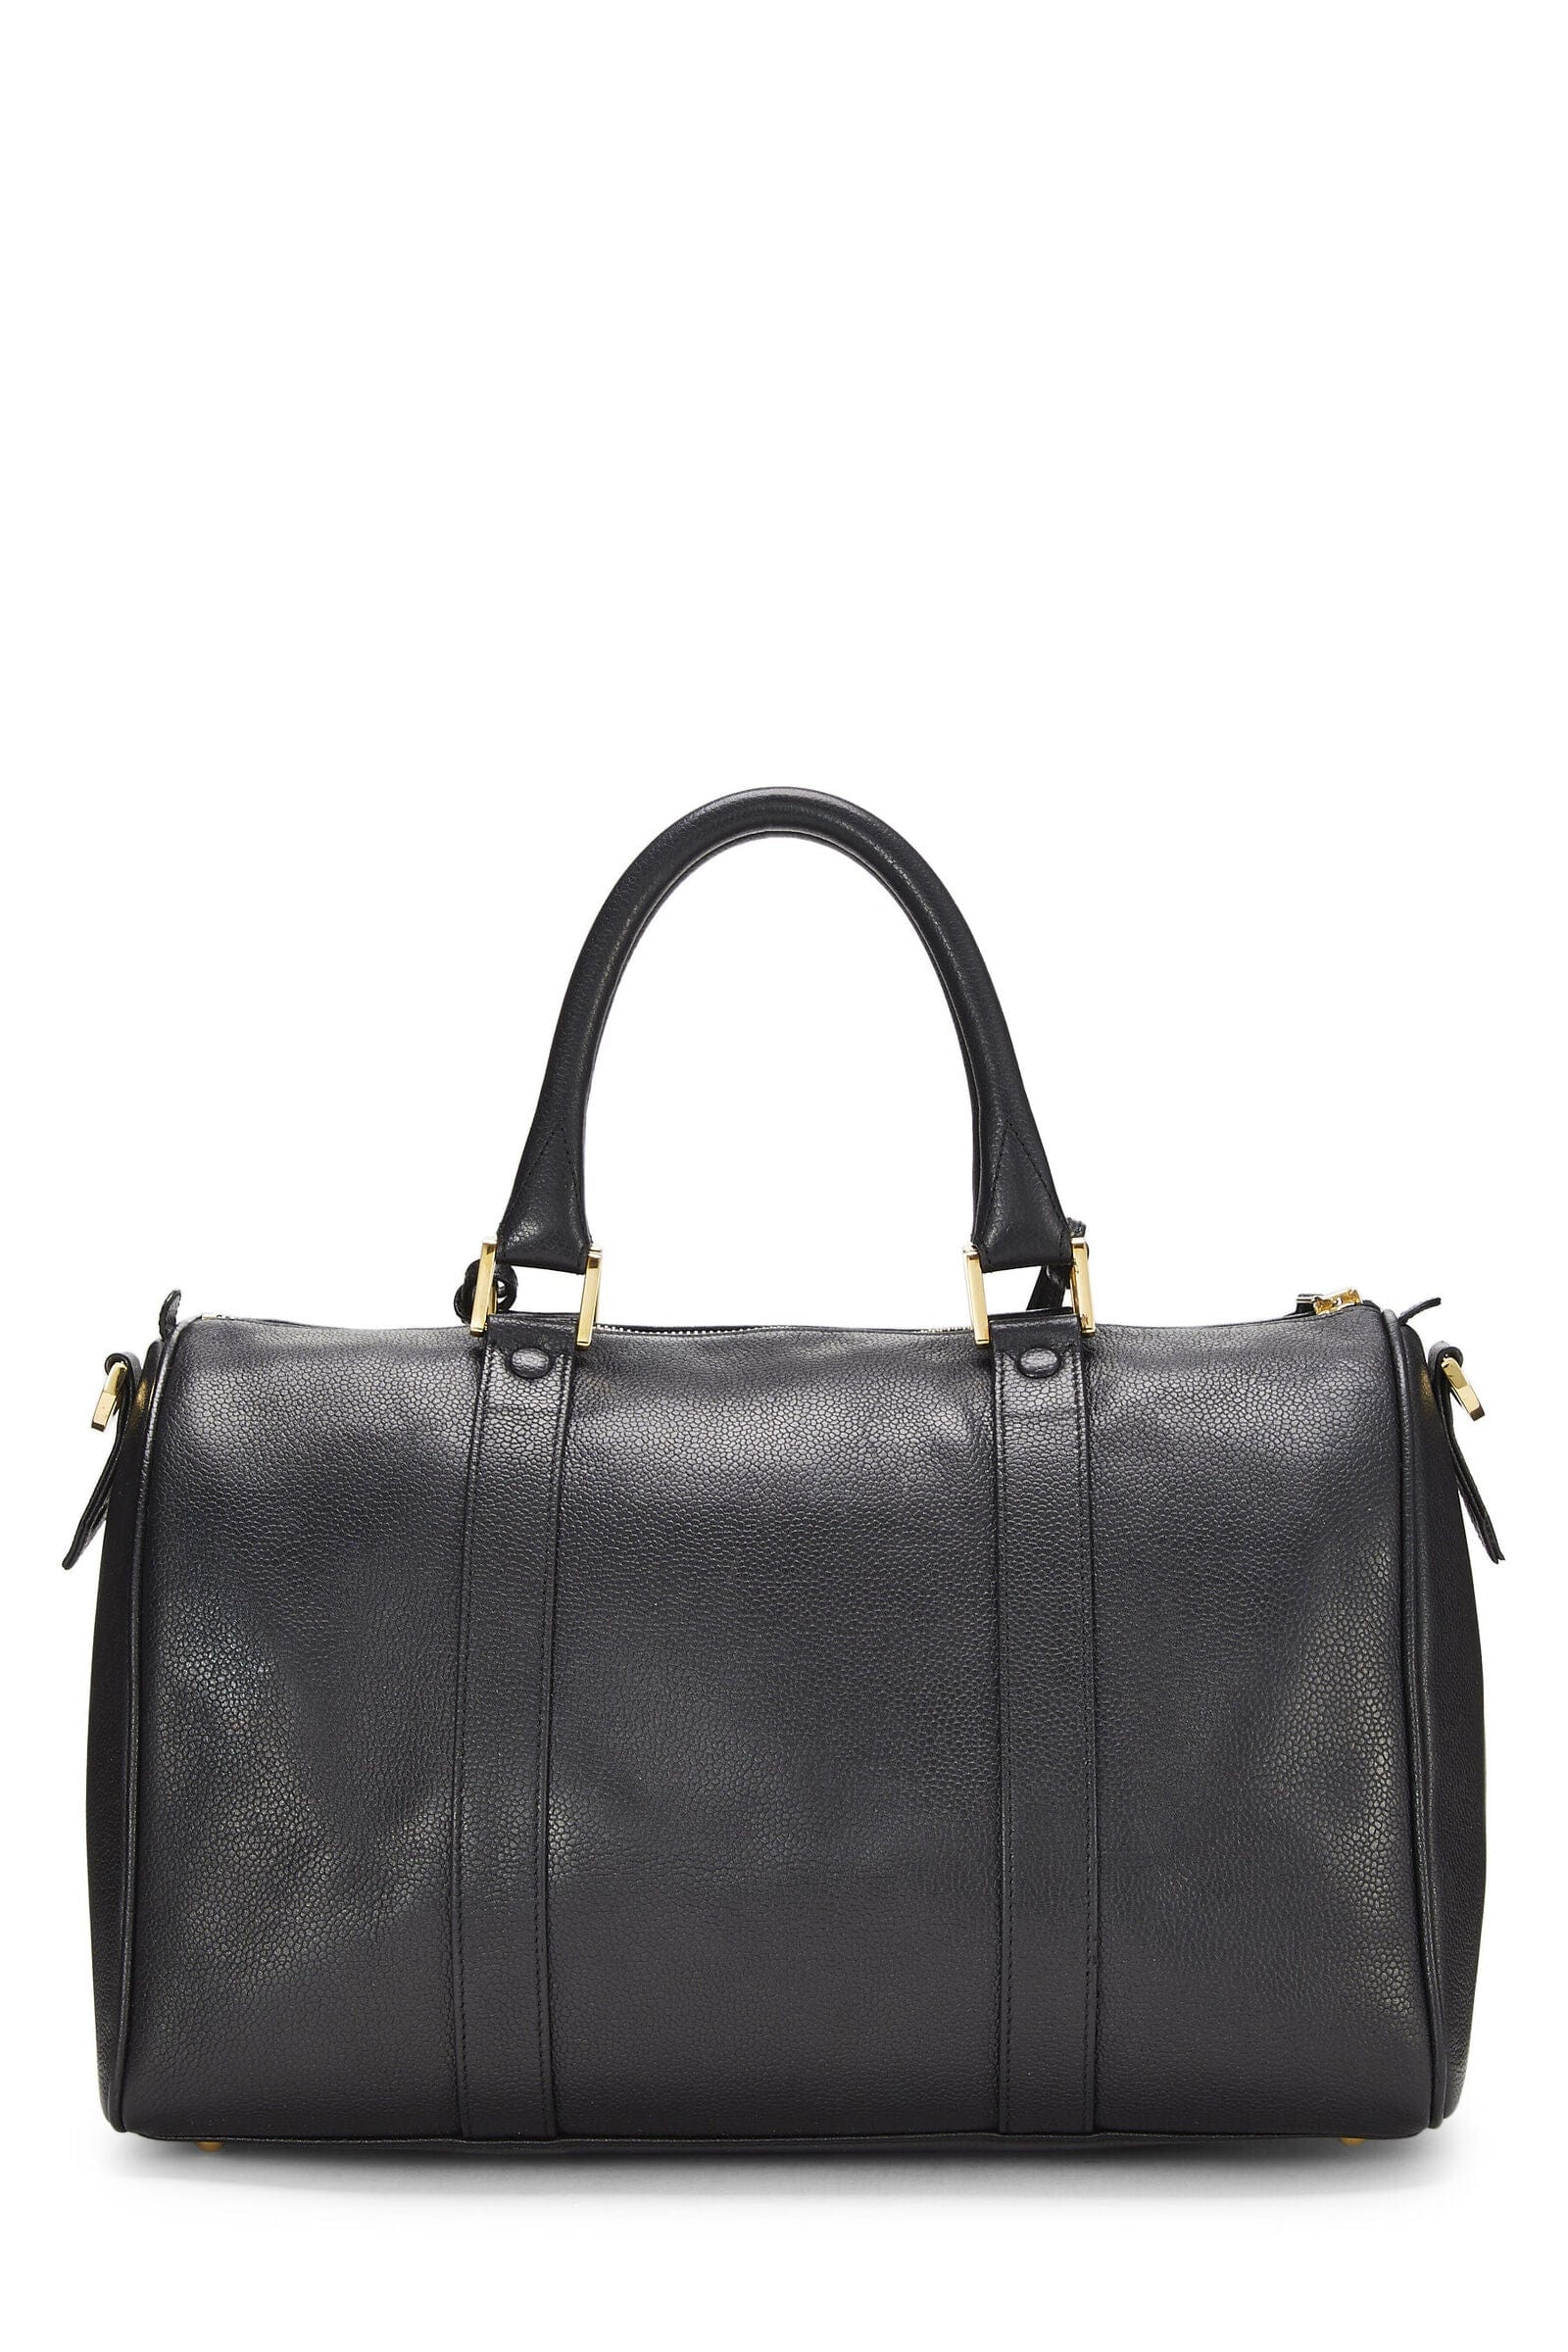 Chanel Chanel Black Small Boston Bag Q6B04J0FKH010